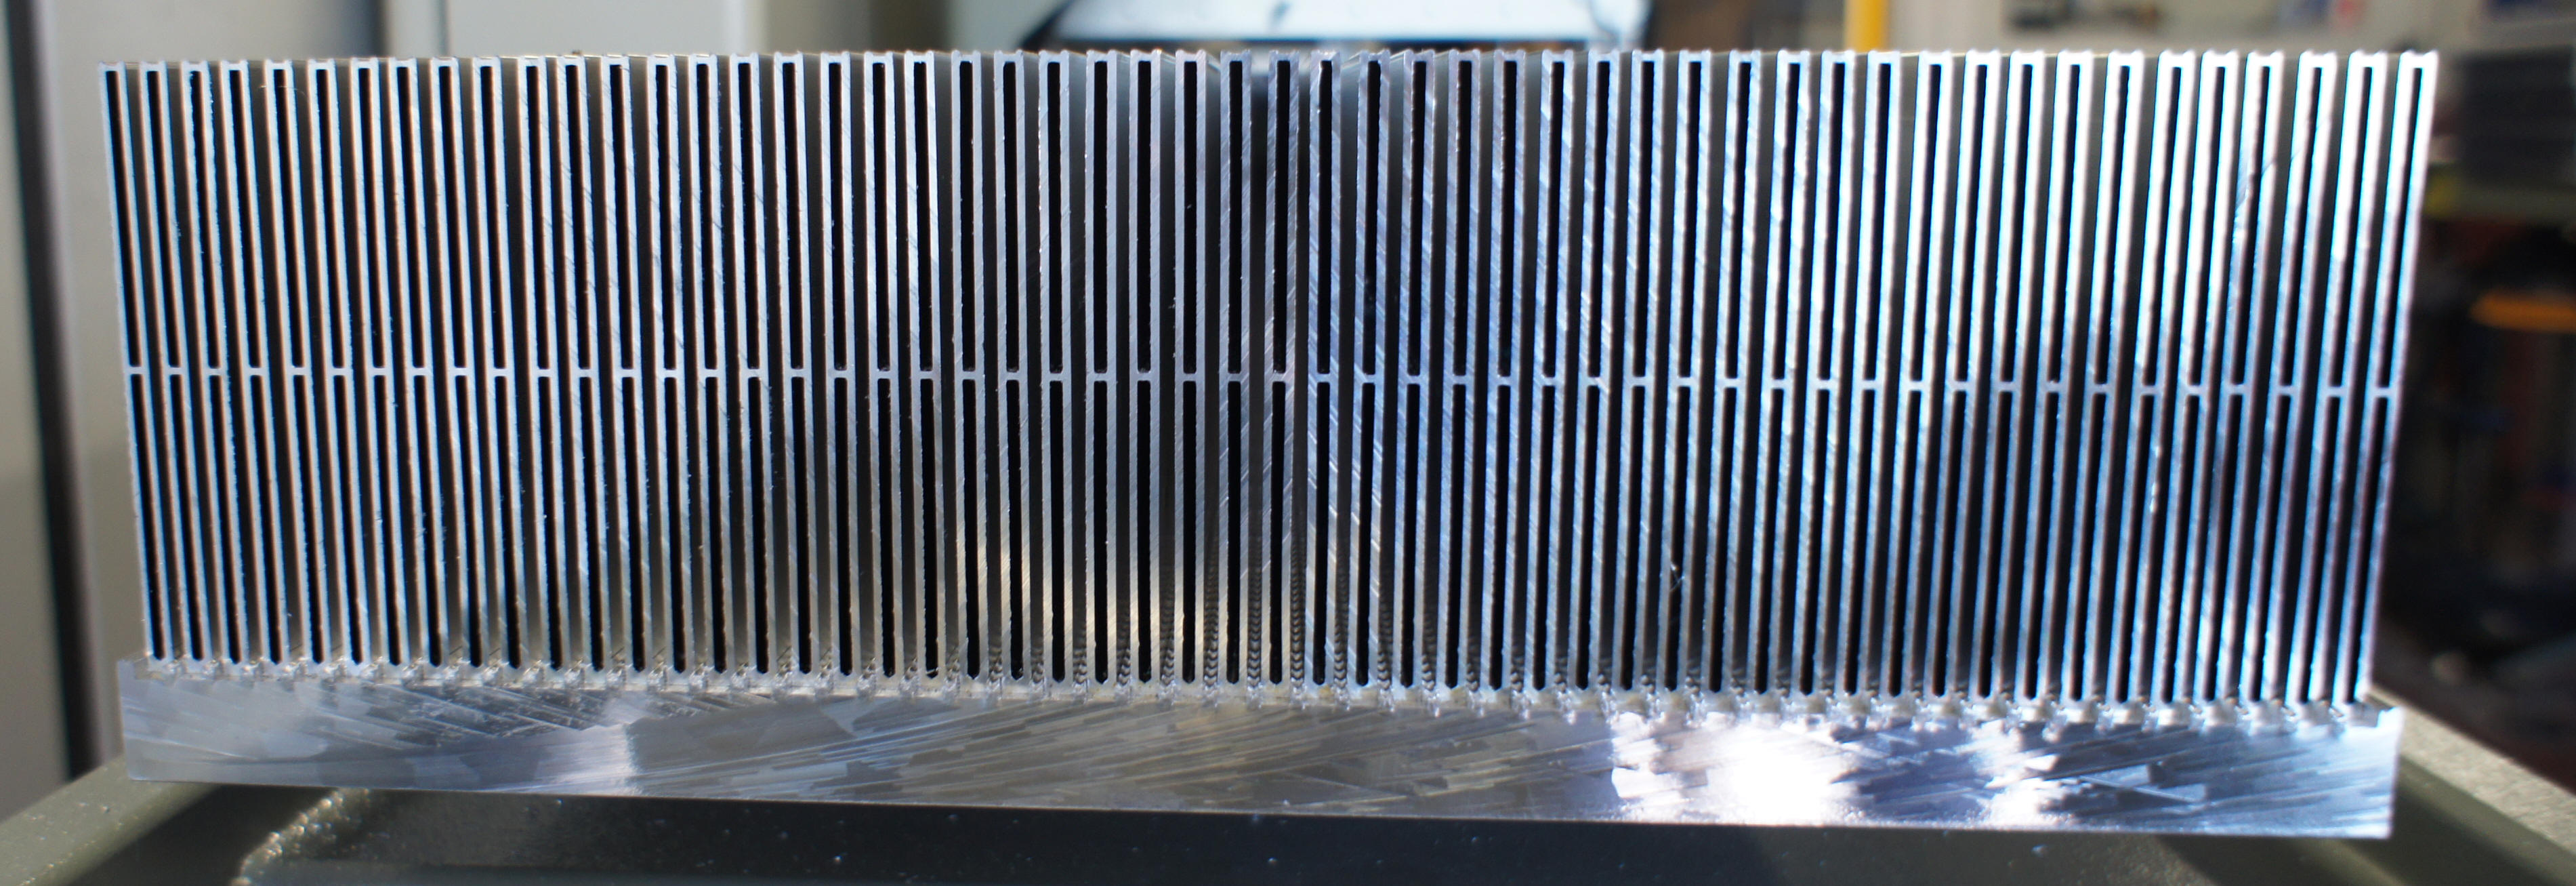 Dissipateur thermique en aluminium - Power Products International - extrudé